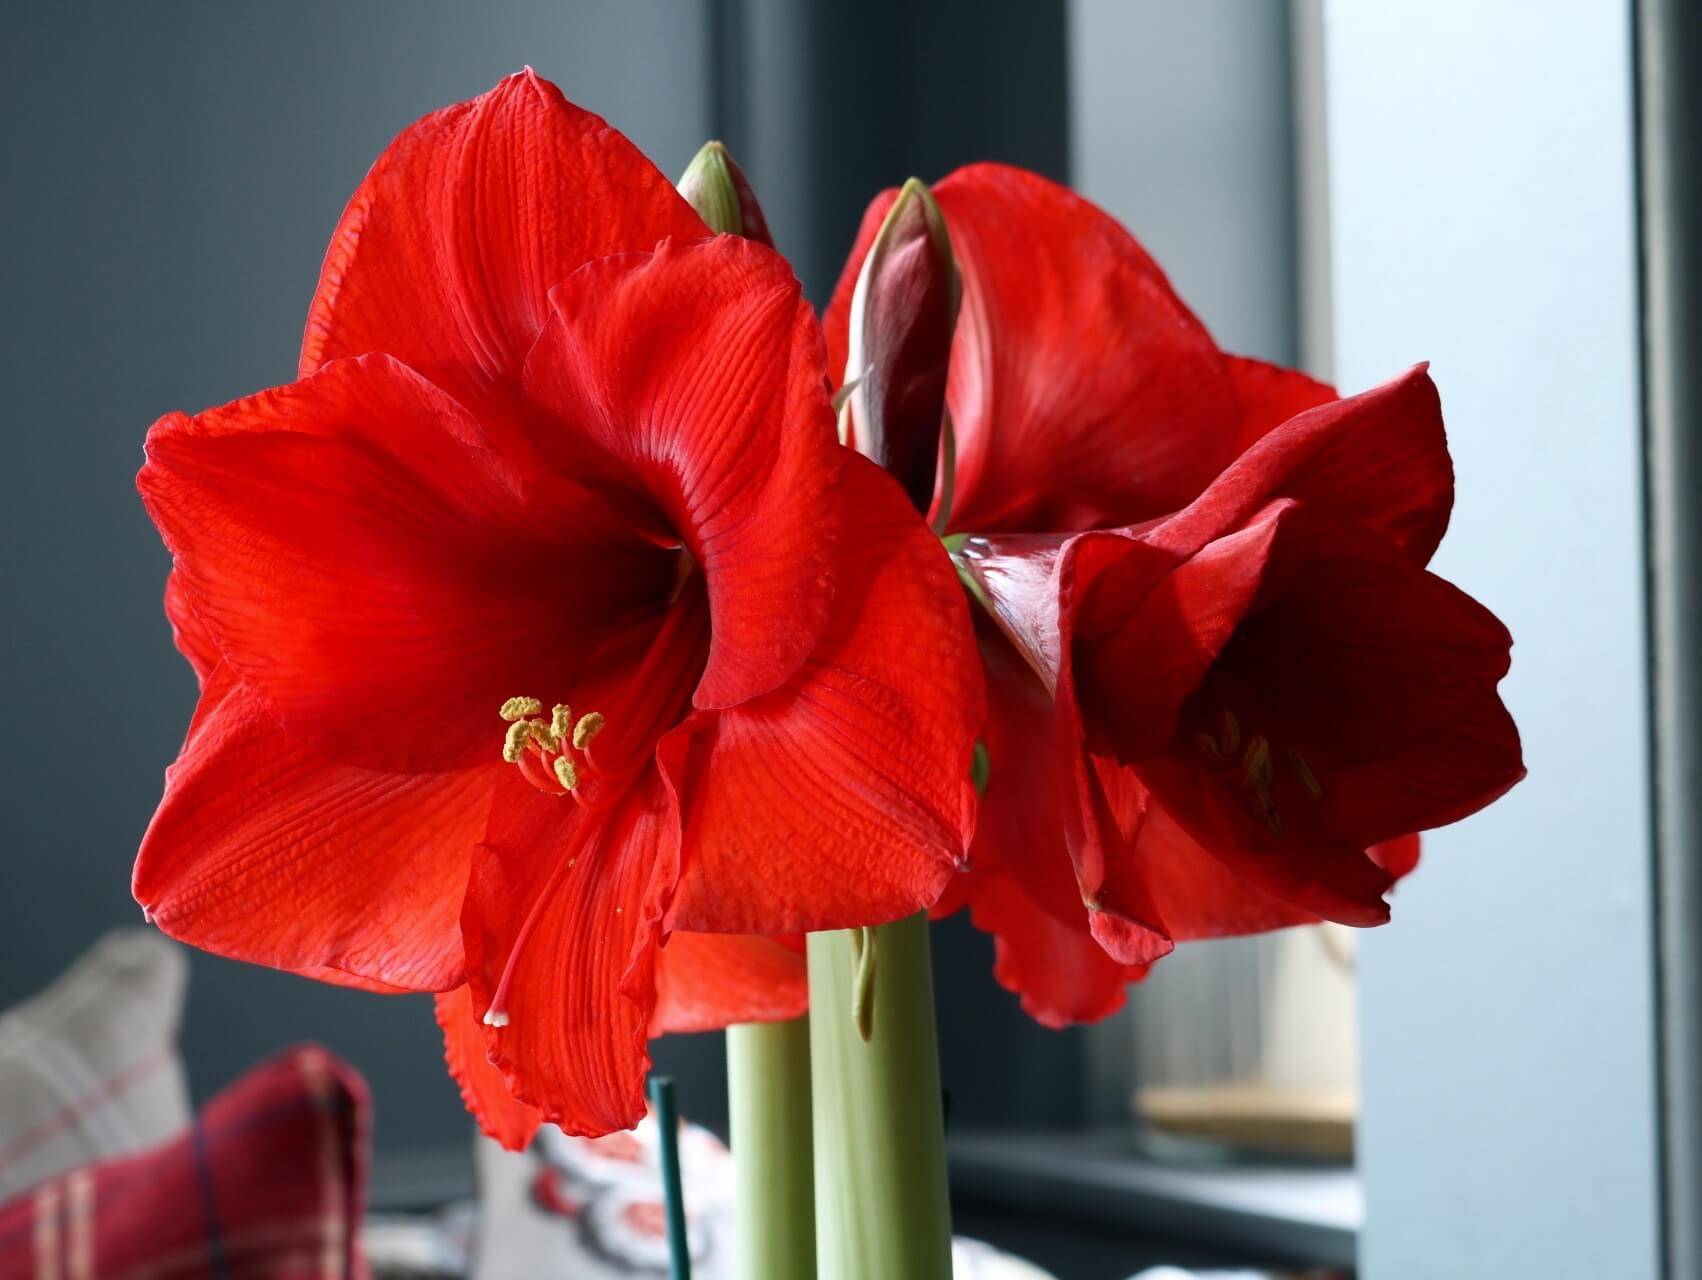 Цветок амариллис: уход в домашних условиях, фото и посадка амариллиса, домашний амариллис зимой